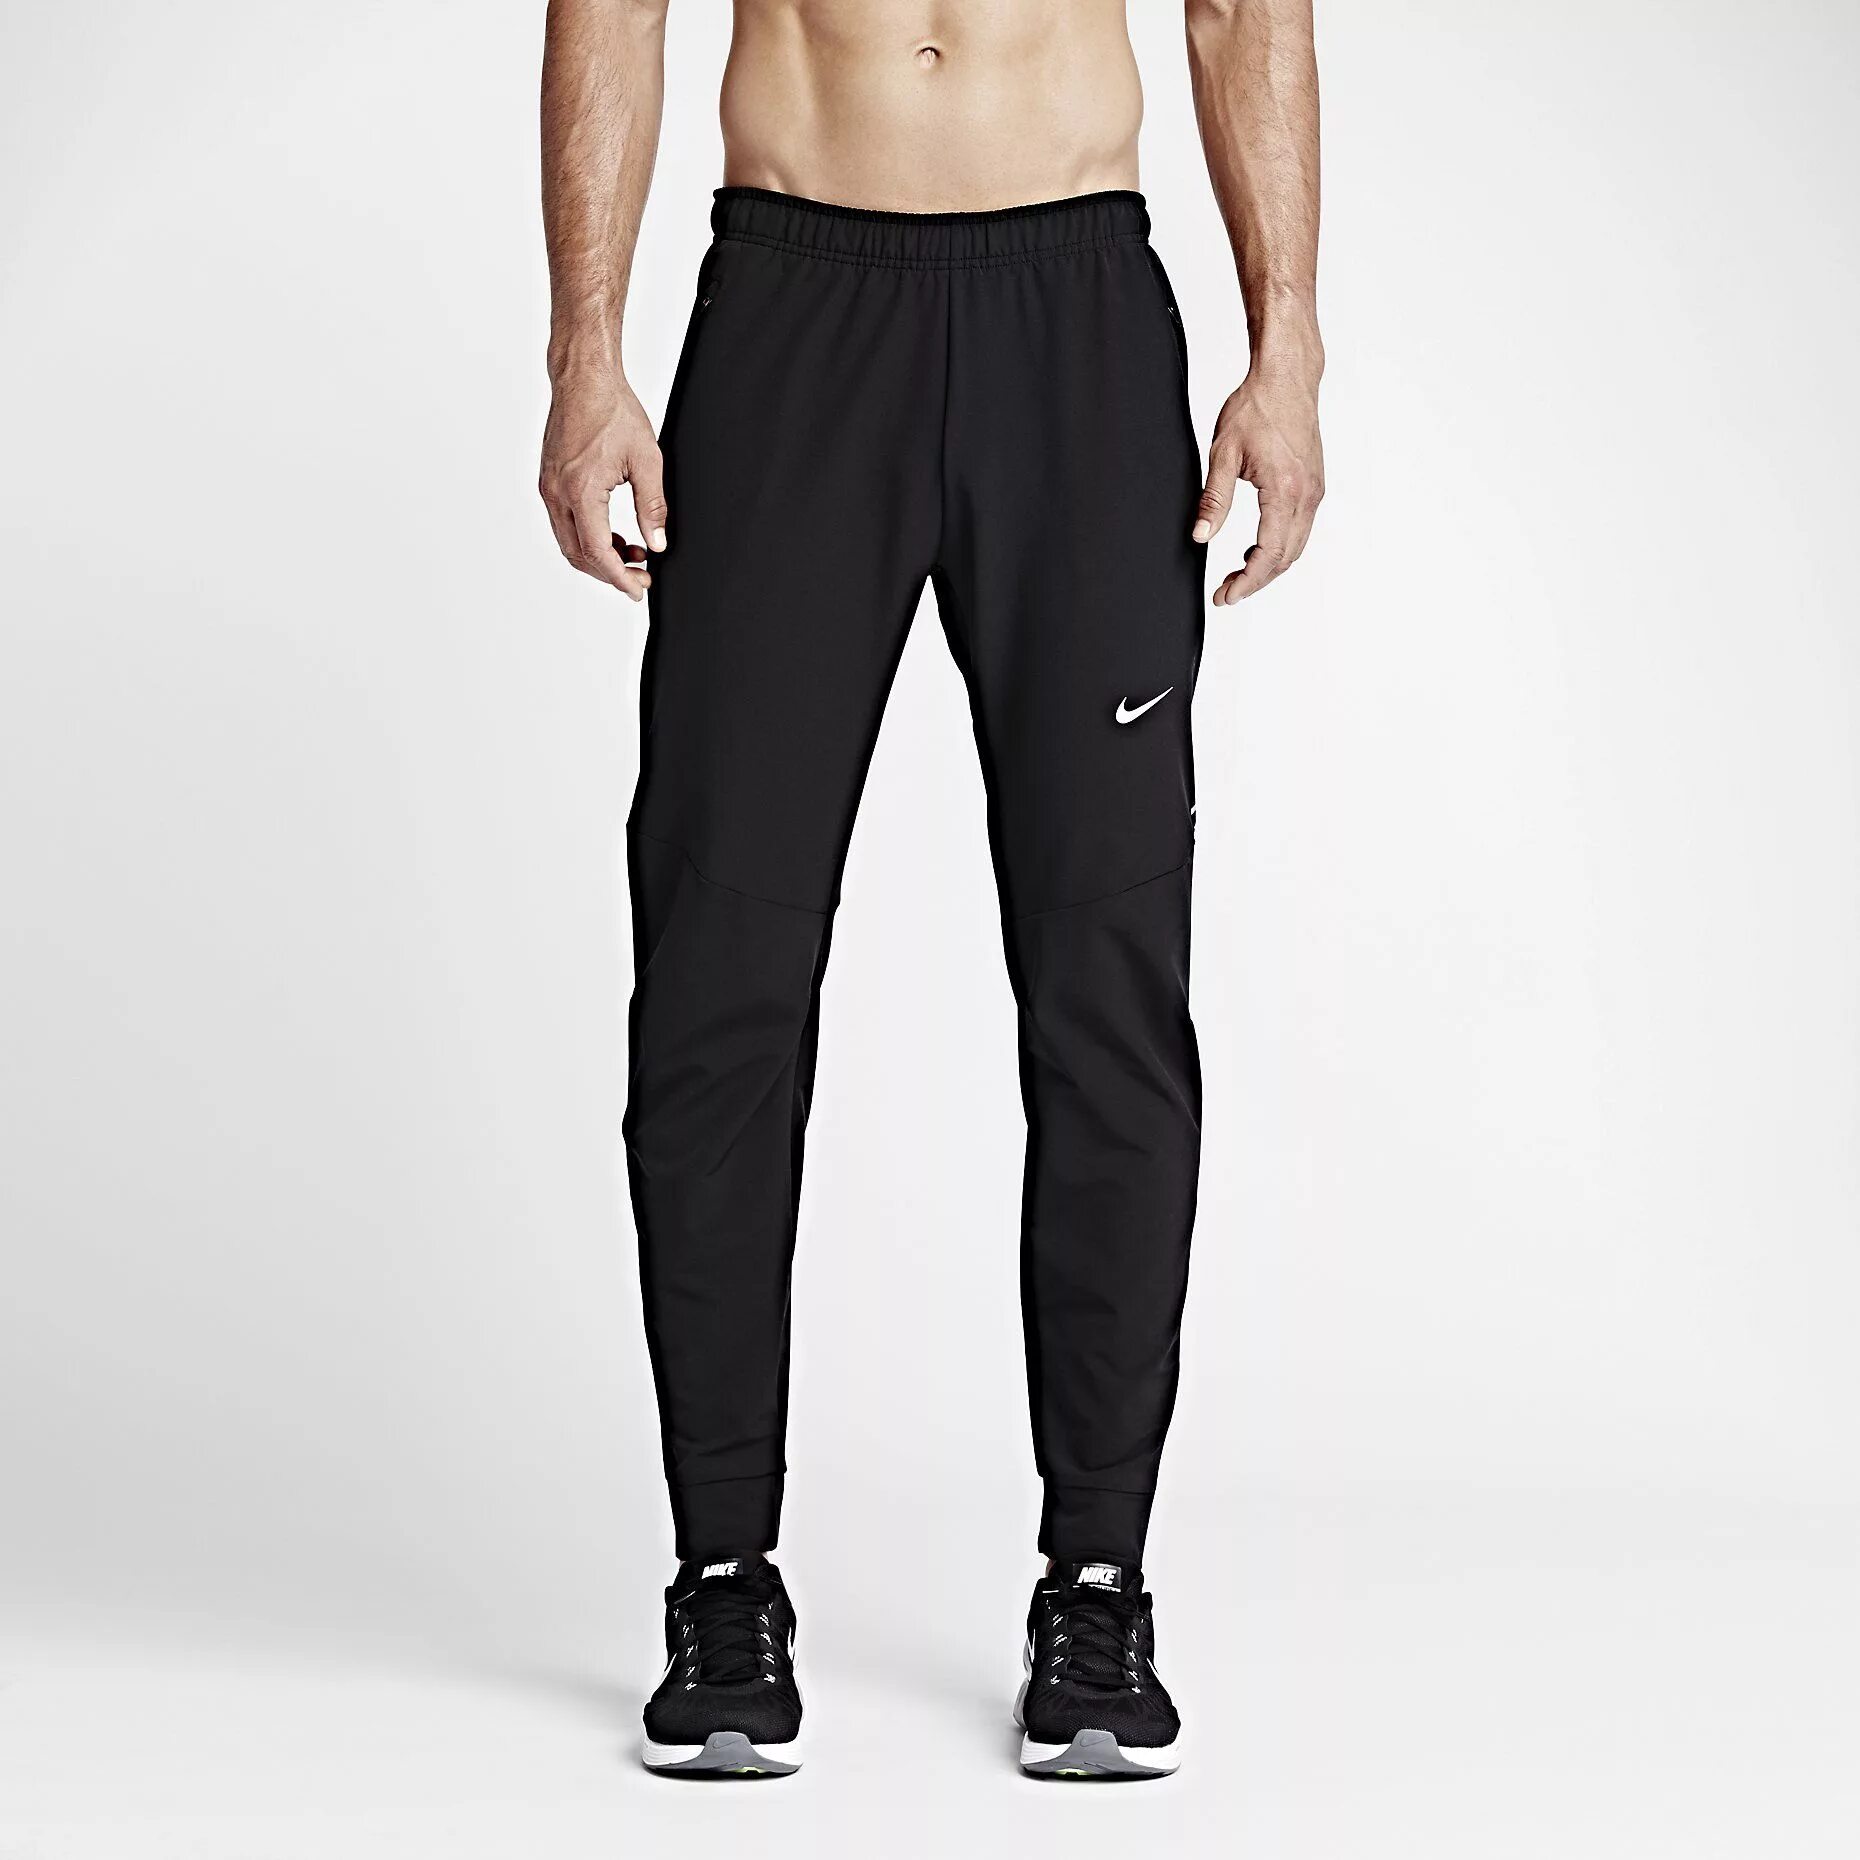 Черные штаны найк. Nike Dri-Fit Pants. Трико Nike Dri-Fit. Nike Dri Fit штаны. Черные штаны Nike Dri-Fit.